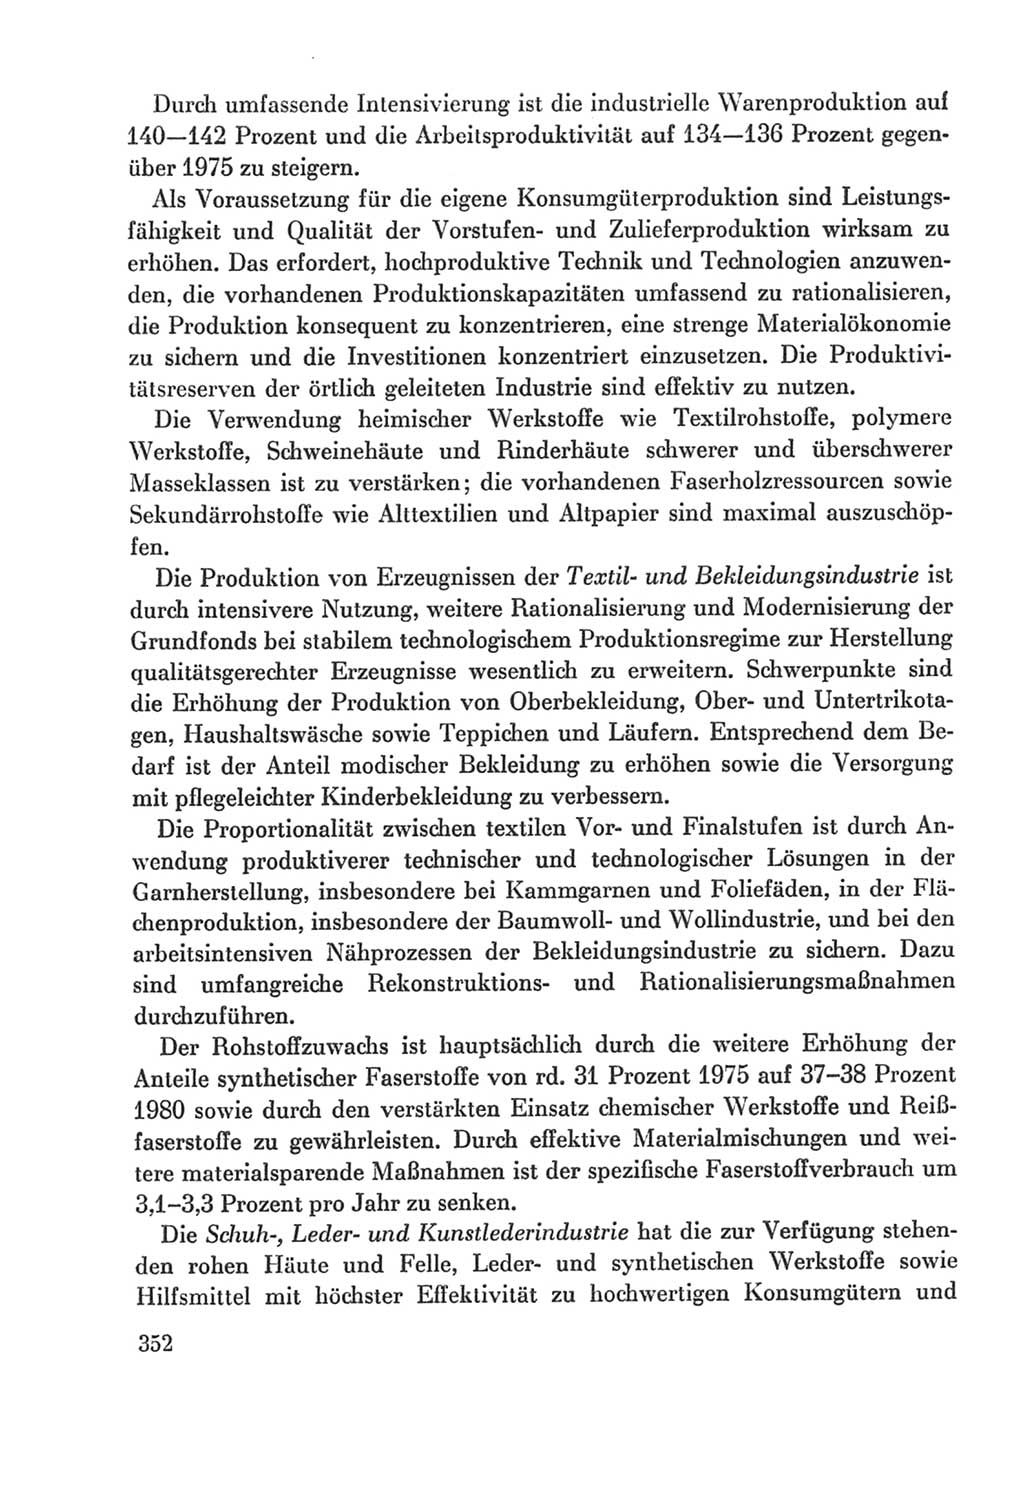 Protokoll der Verhandlungen des Ⅸ. Parteitages der Sozialistischen Einheitspartei Deutschlands (SED) [Deutsche Demokratische Republik (DDR)] 1976, Band 2, Seite 352 (Prot. Verh. Ⅸ. PT SED DDR 1976, Bd. 2, S. 352)